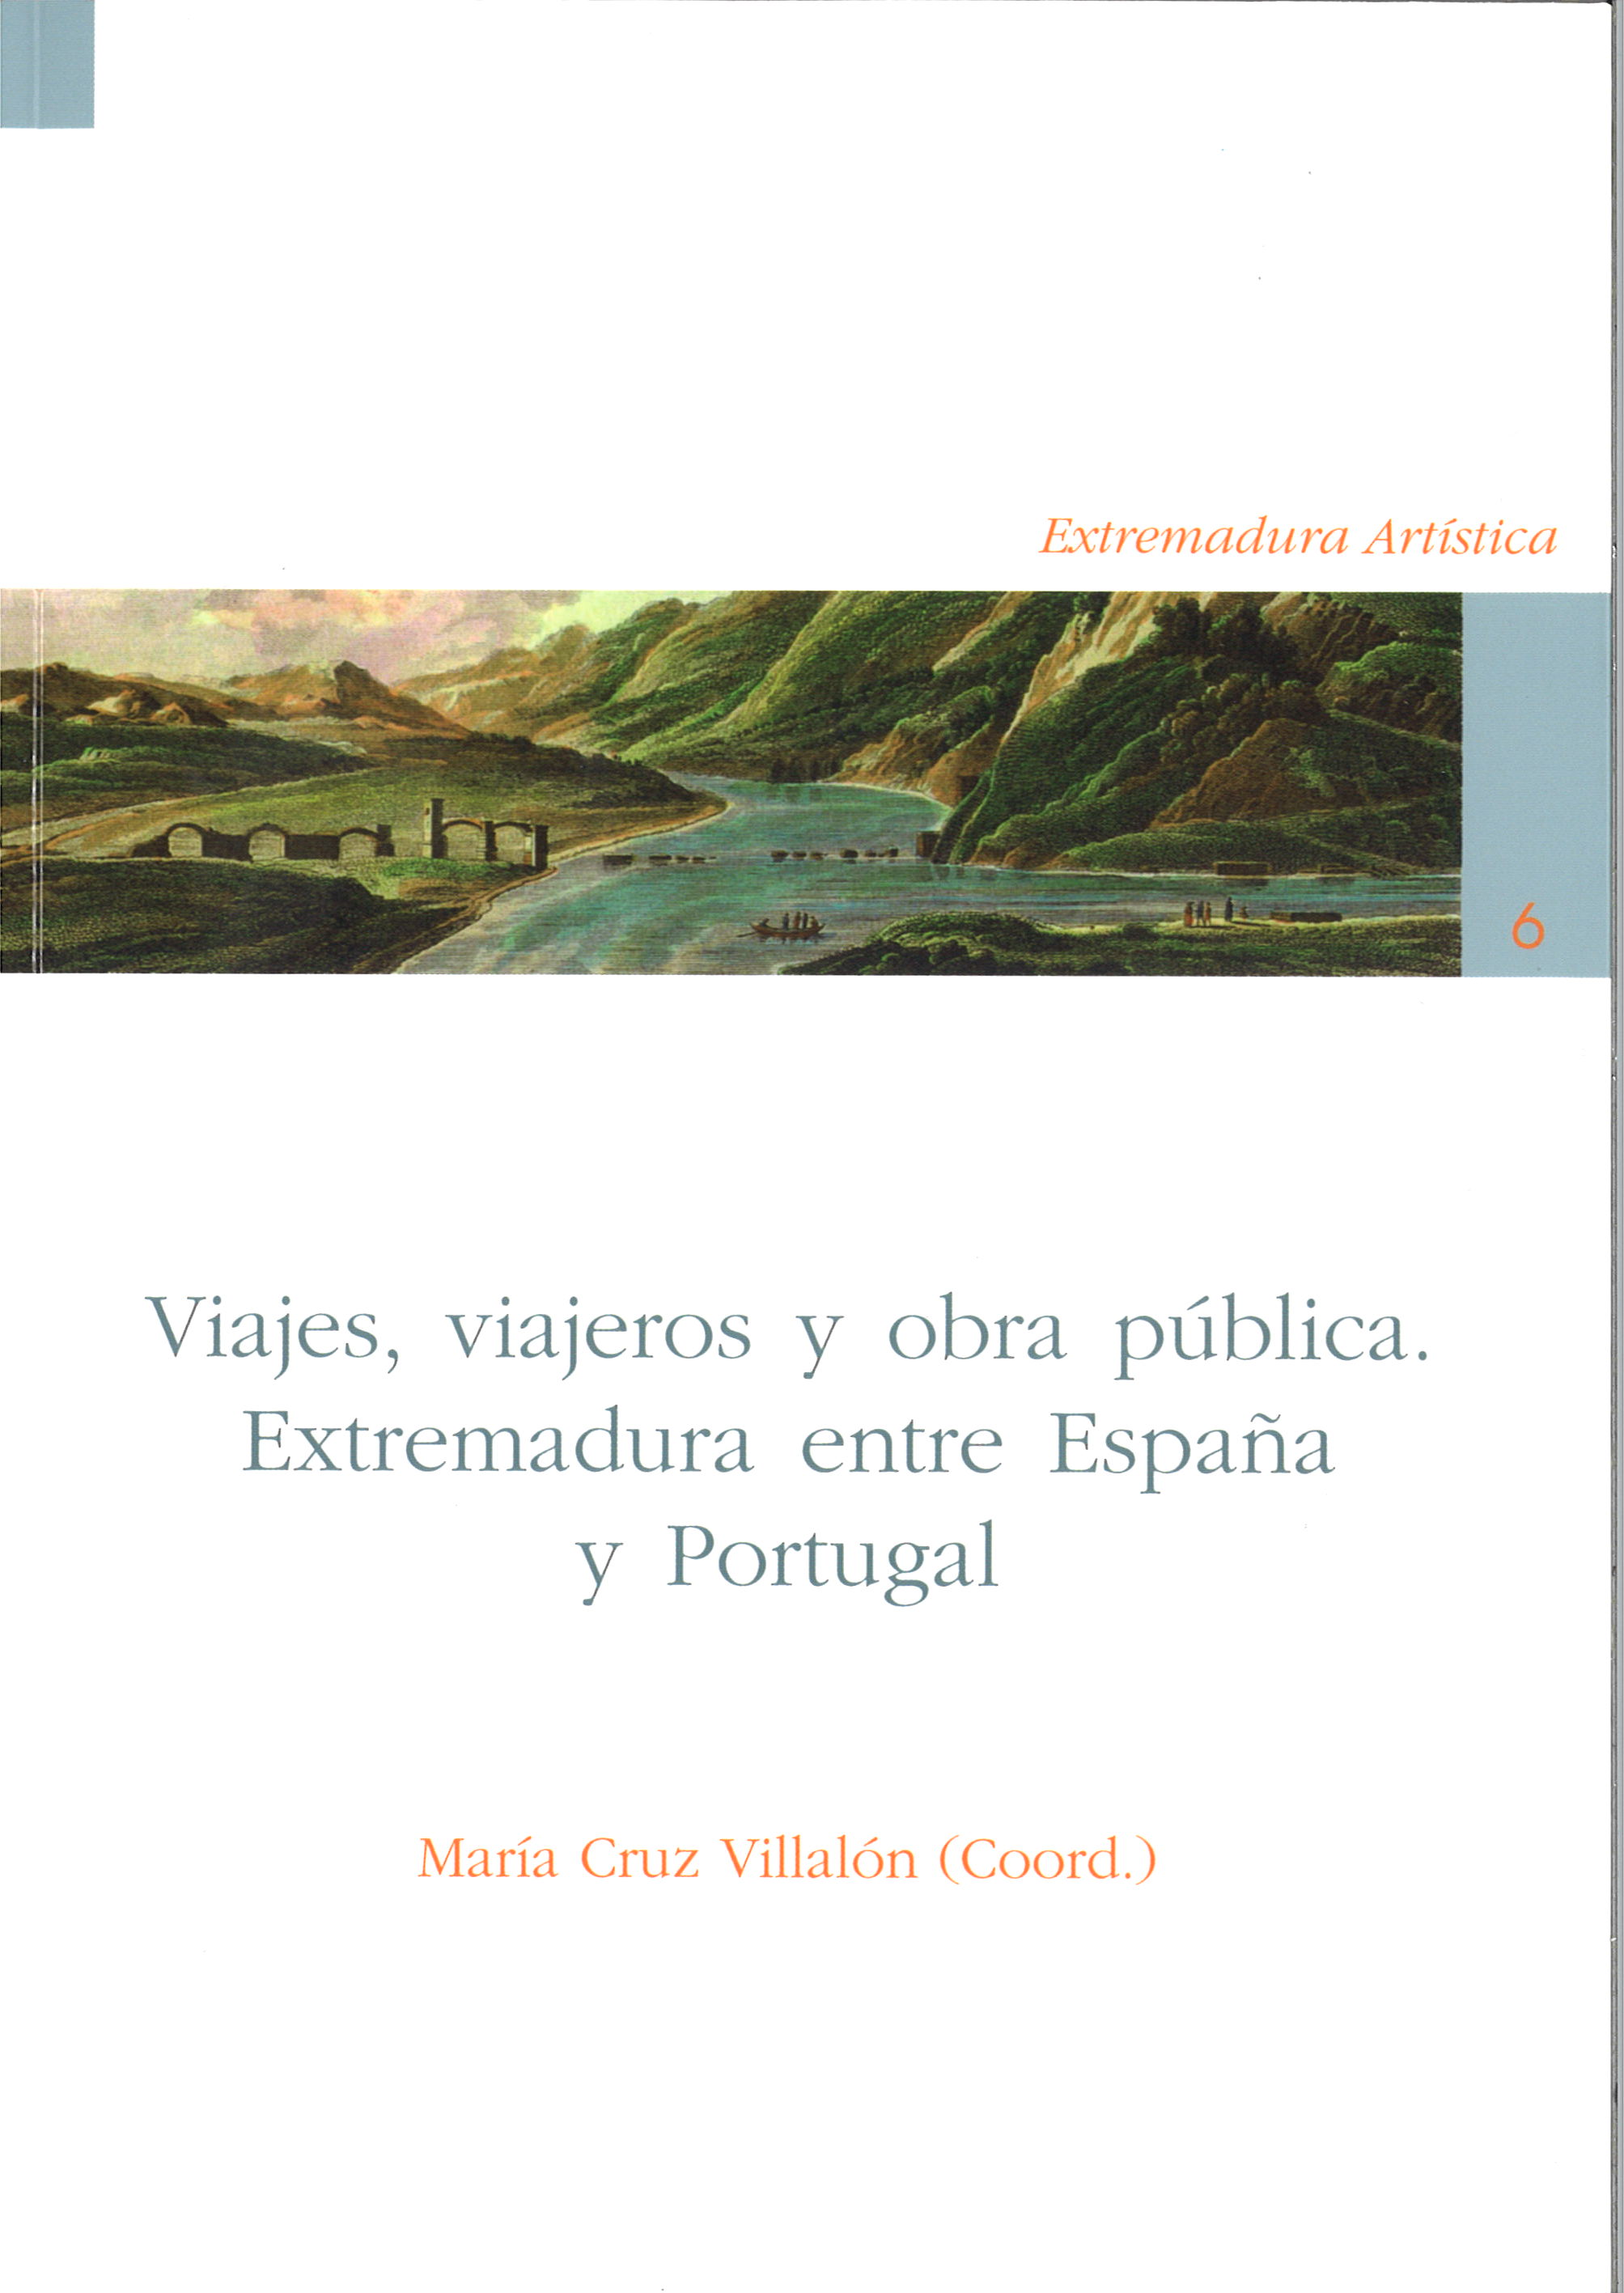 Imagen de portada del libro Viajes, viajeros y obra pública. Extremadura entre España y Portugal